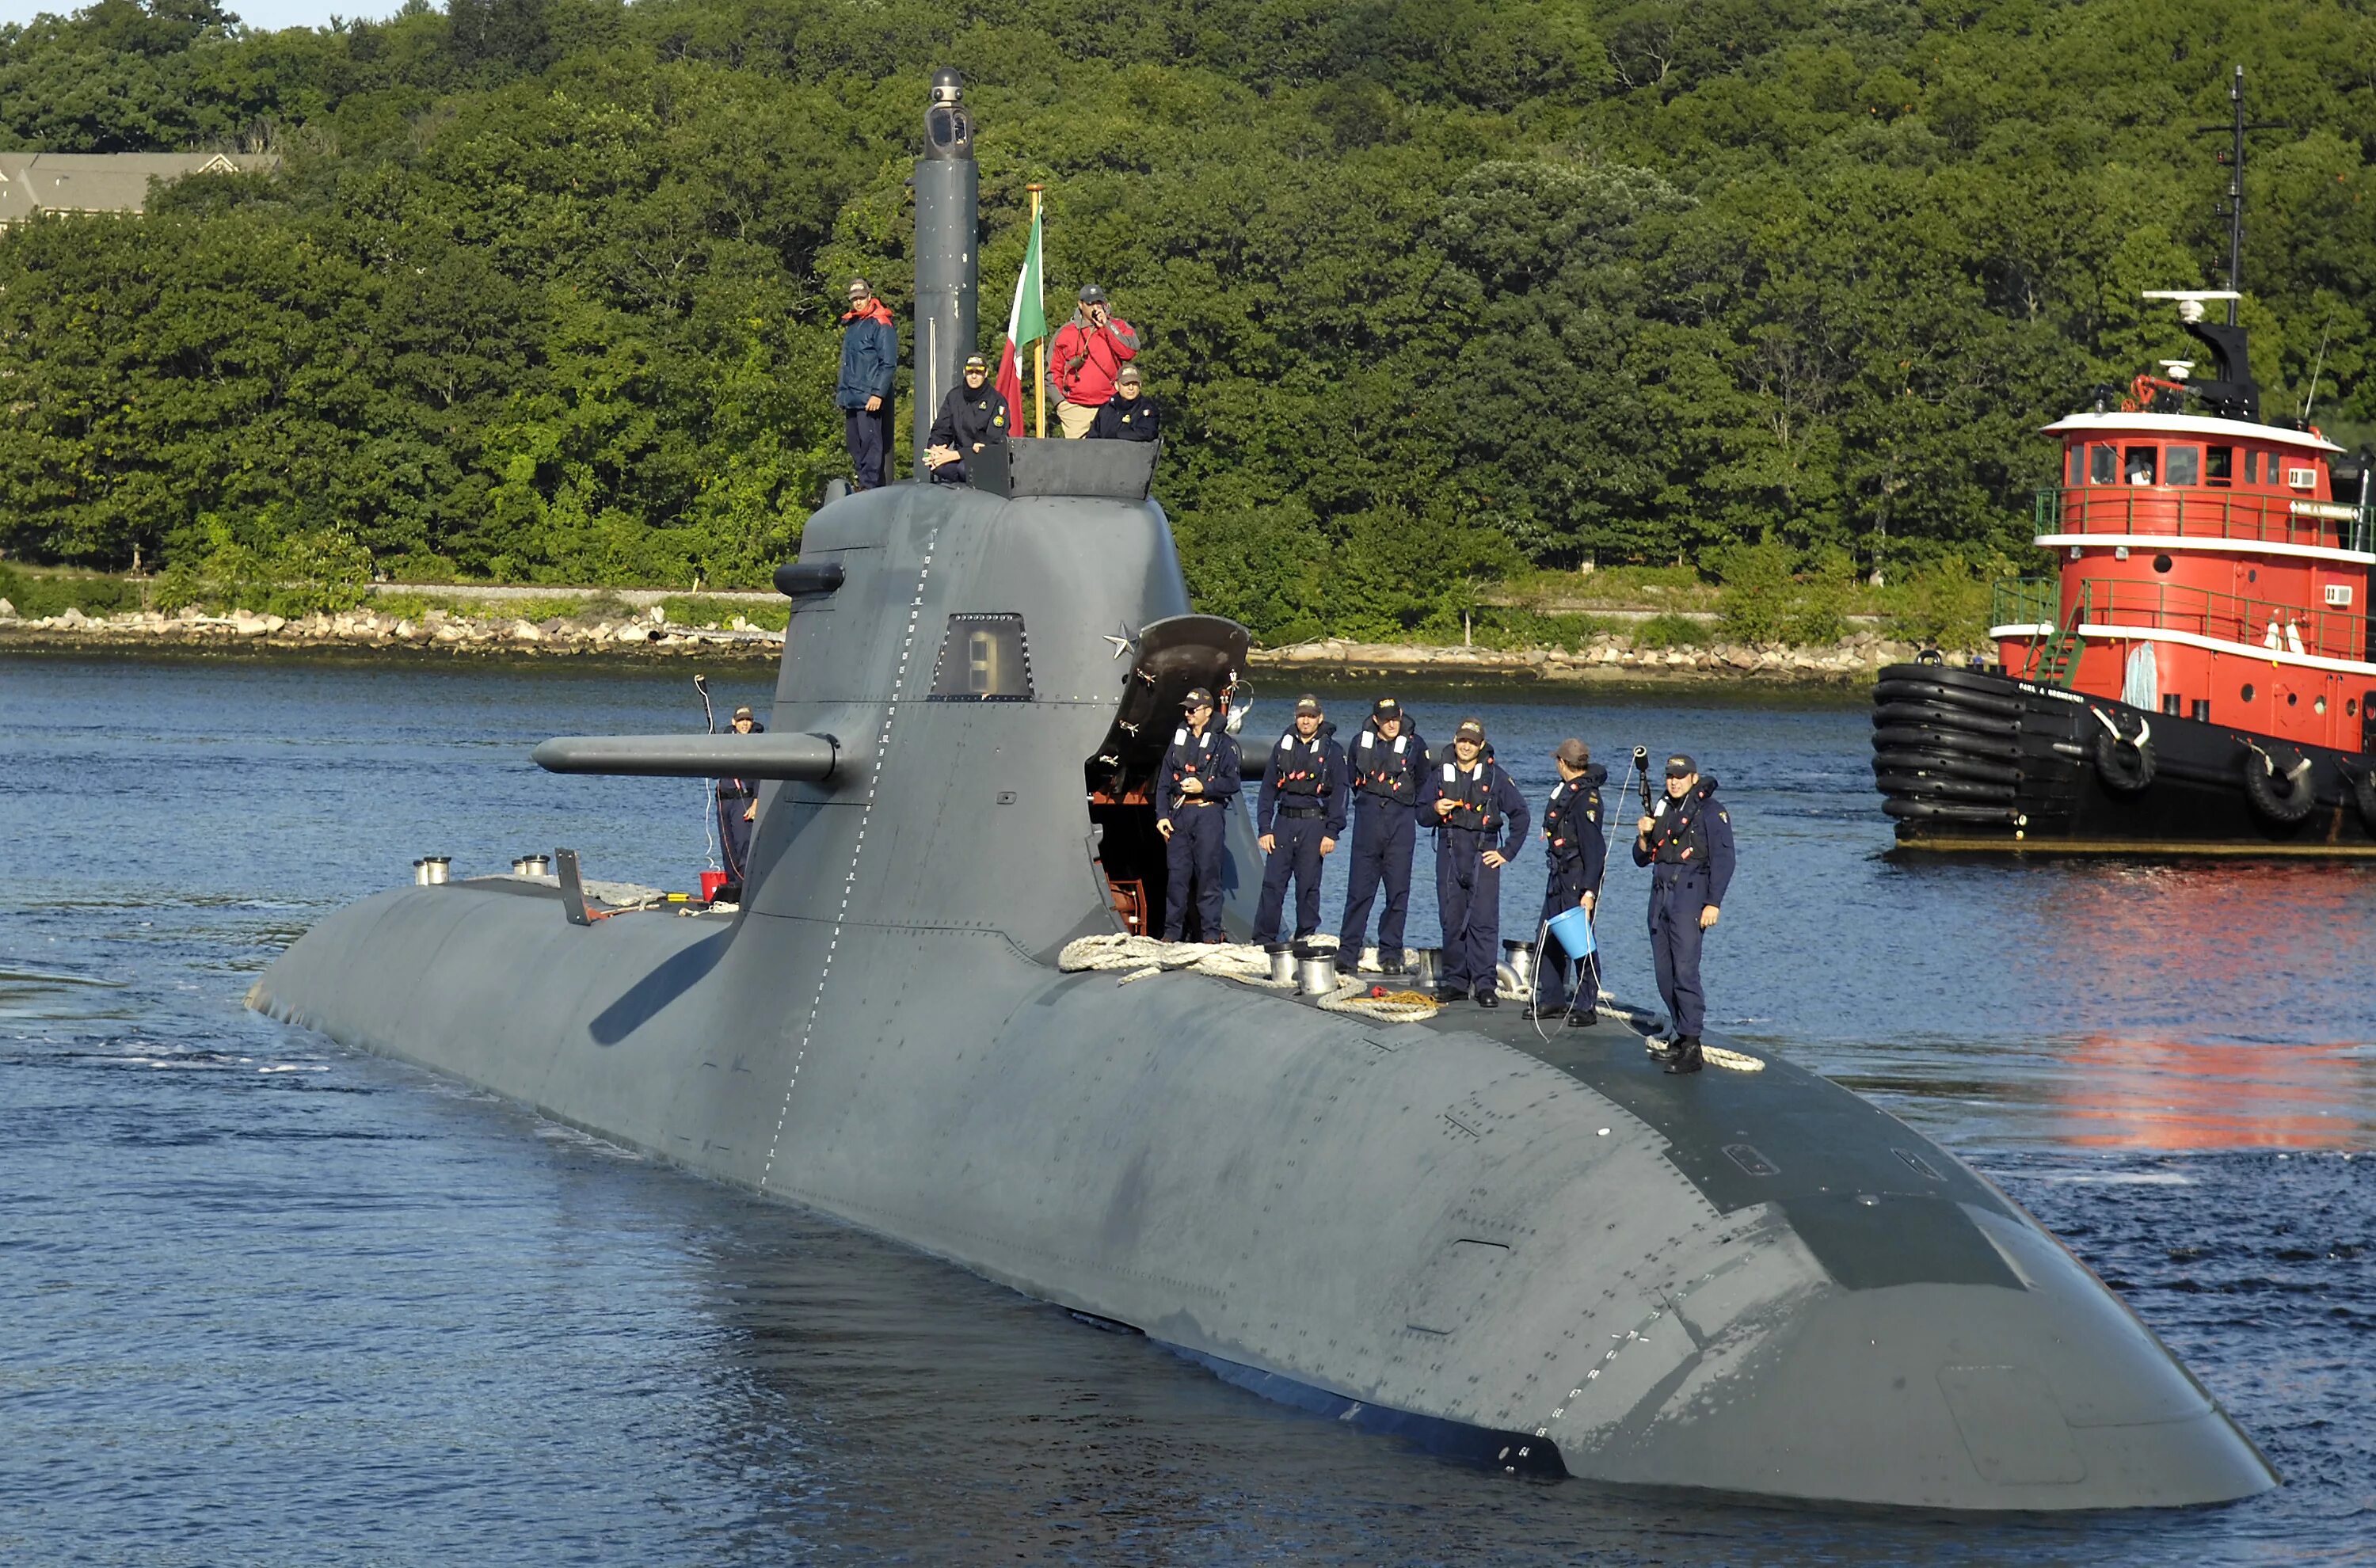 Виды пл. Подводные лодки проекта 212а. Type 212 Submarine. АПЛ 677 проект.